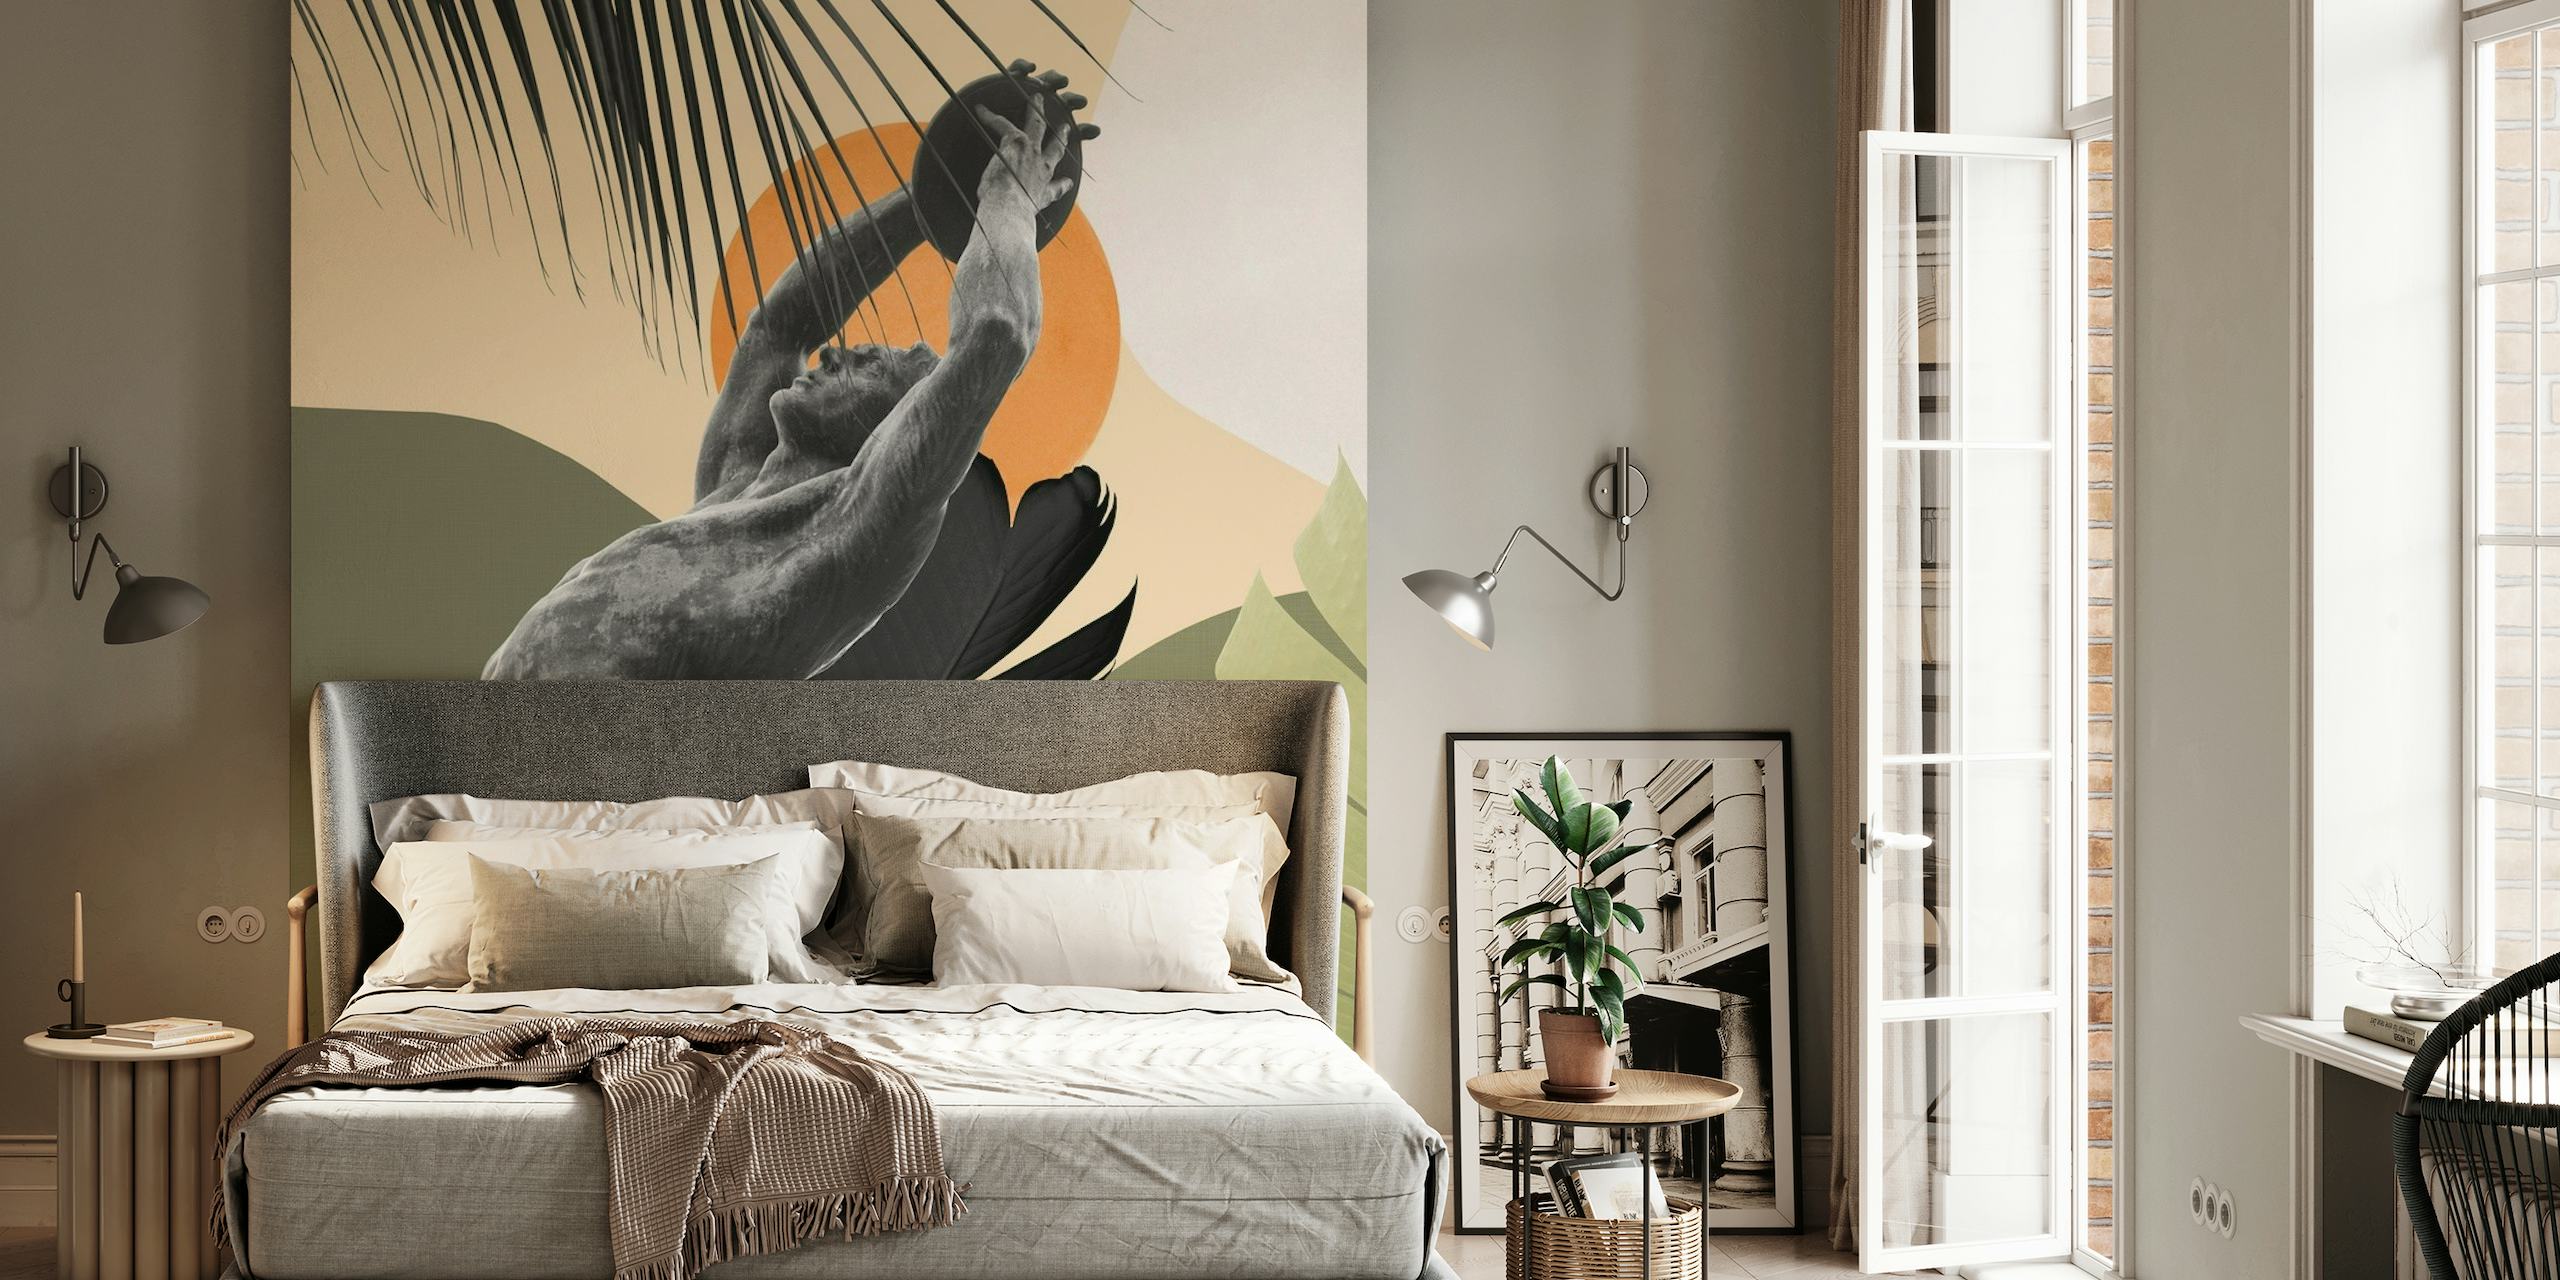 Murale artistique représentant un lanceur de disque olympique en action, entouré d'un feuillage tropical et d'un fond aux couleurs chaudes